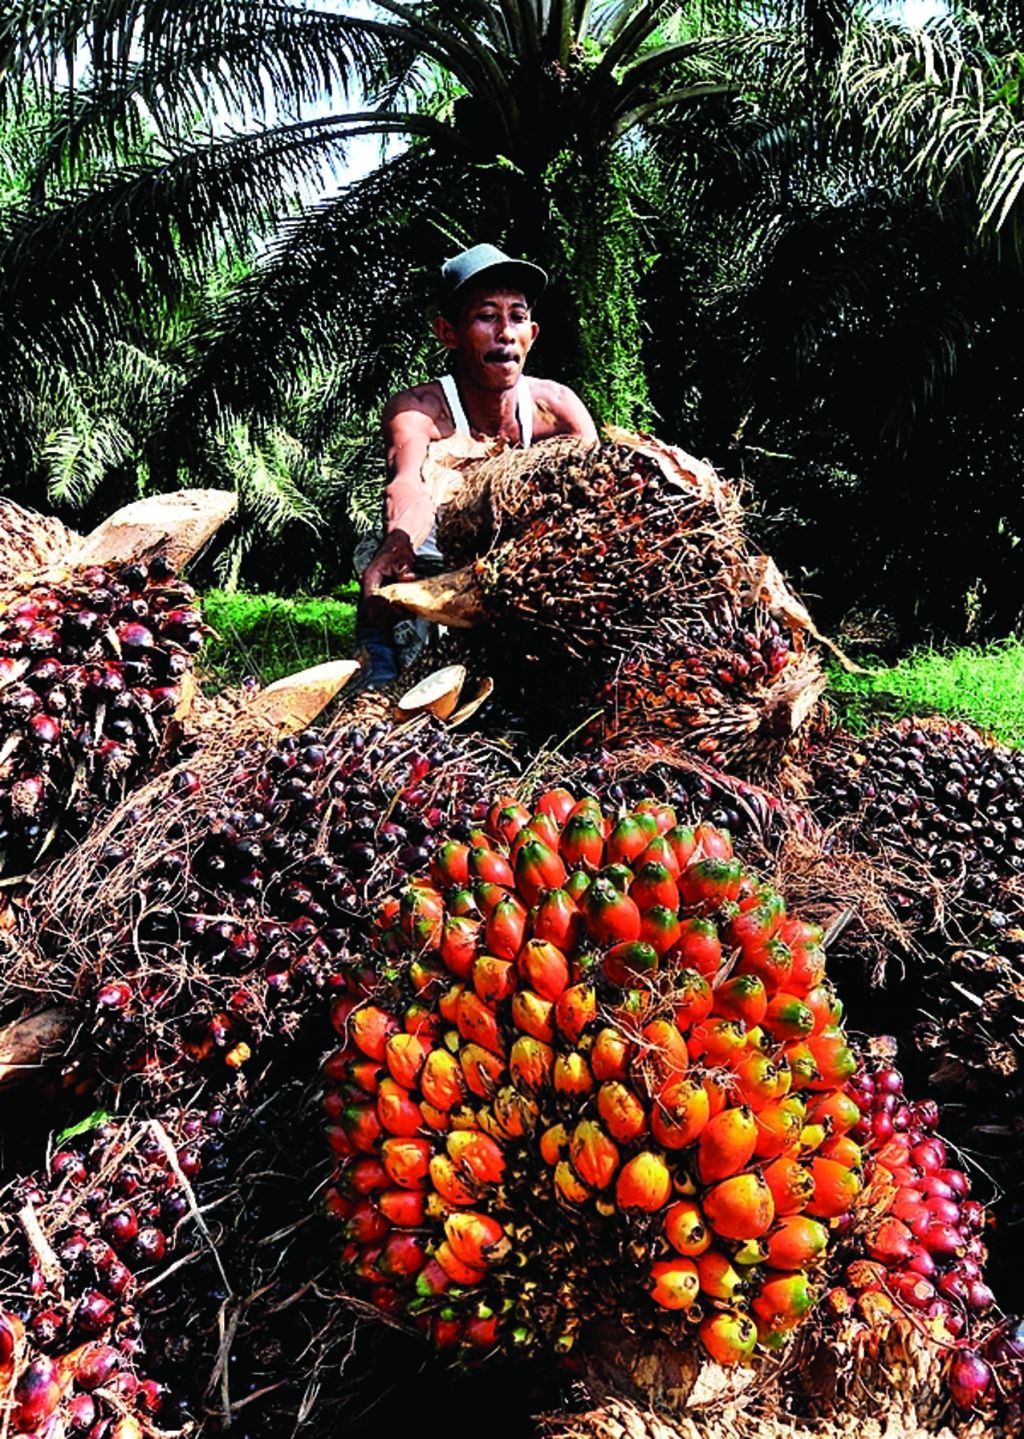 Petani menata tandan buah segar (TBS) kelapa sawit yang baru mereka panen di Desa Paku, Kecamatan galang, Kabupaten Deli Serdang, Sumatera Utara, Senin (10/9/2012).